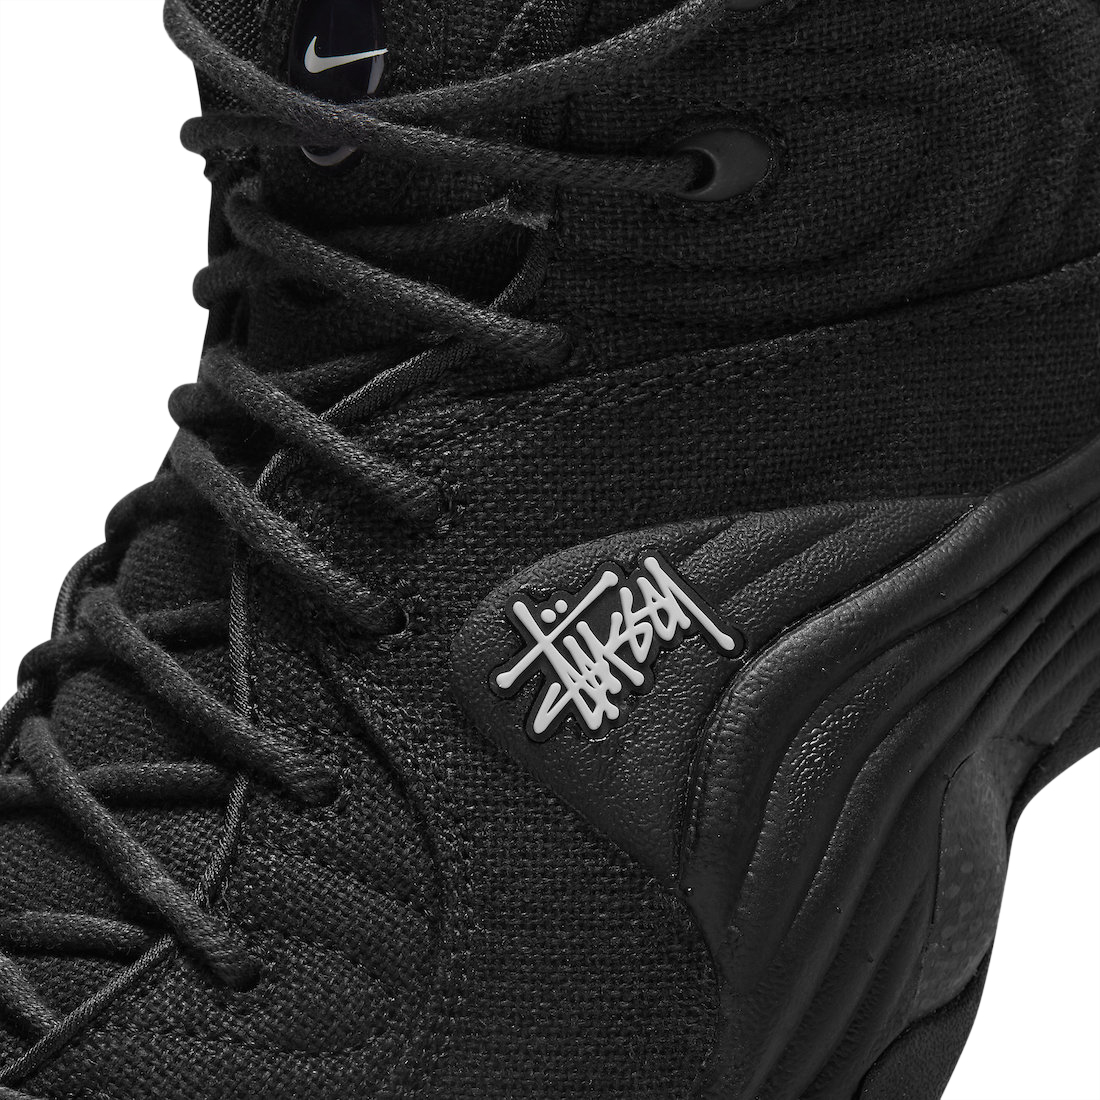 Stussy x Nike Air Penny 2 Black DQ5674-001 - KicksOnFire.com